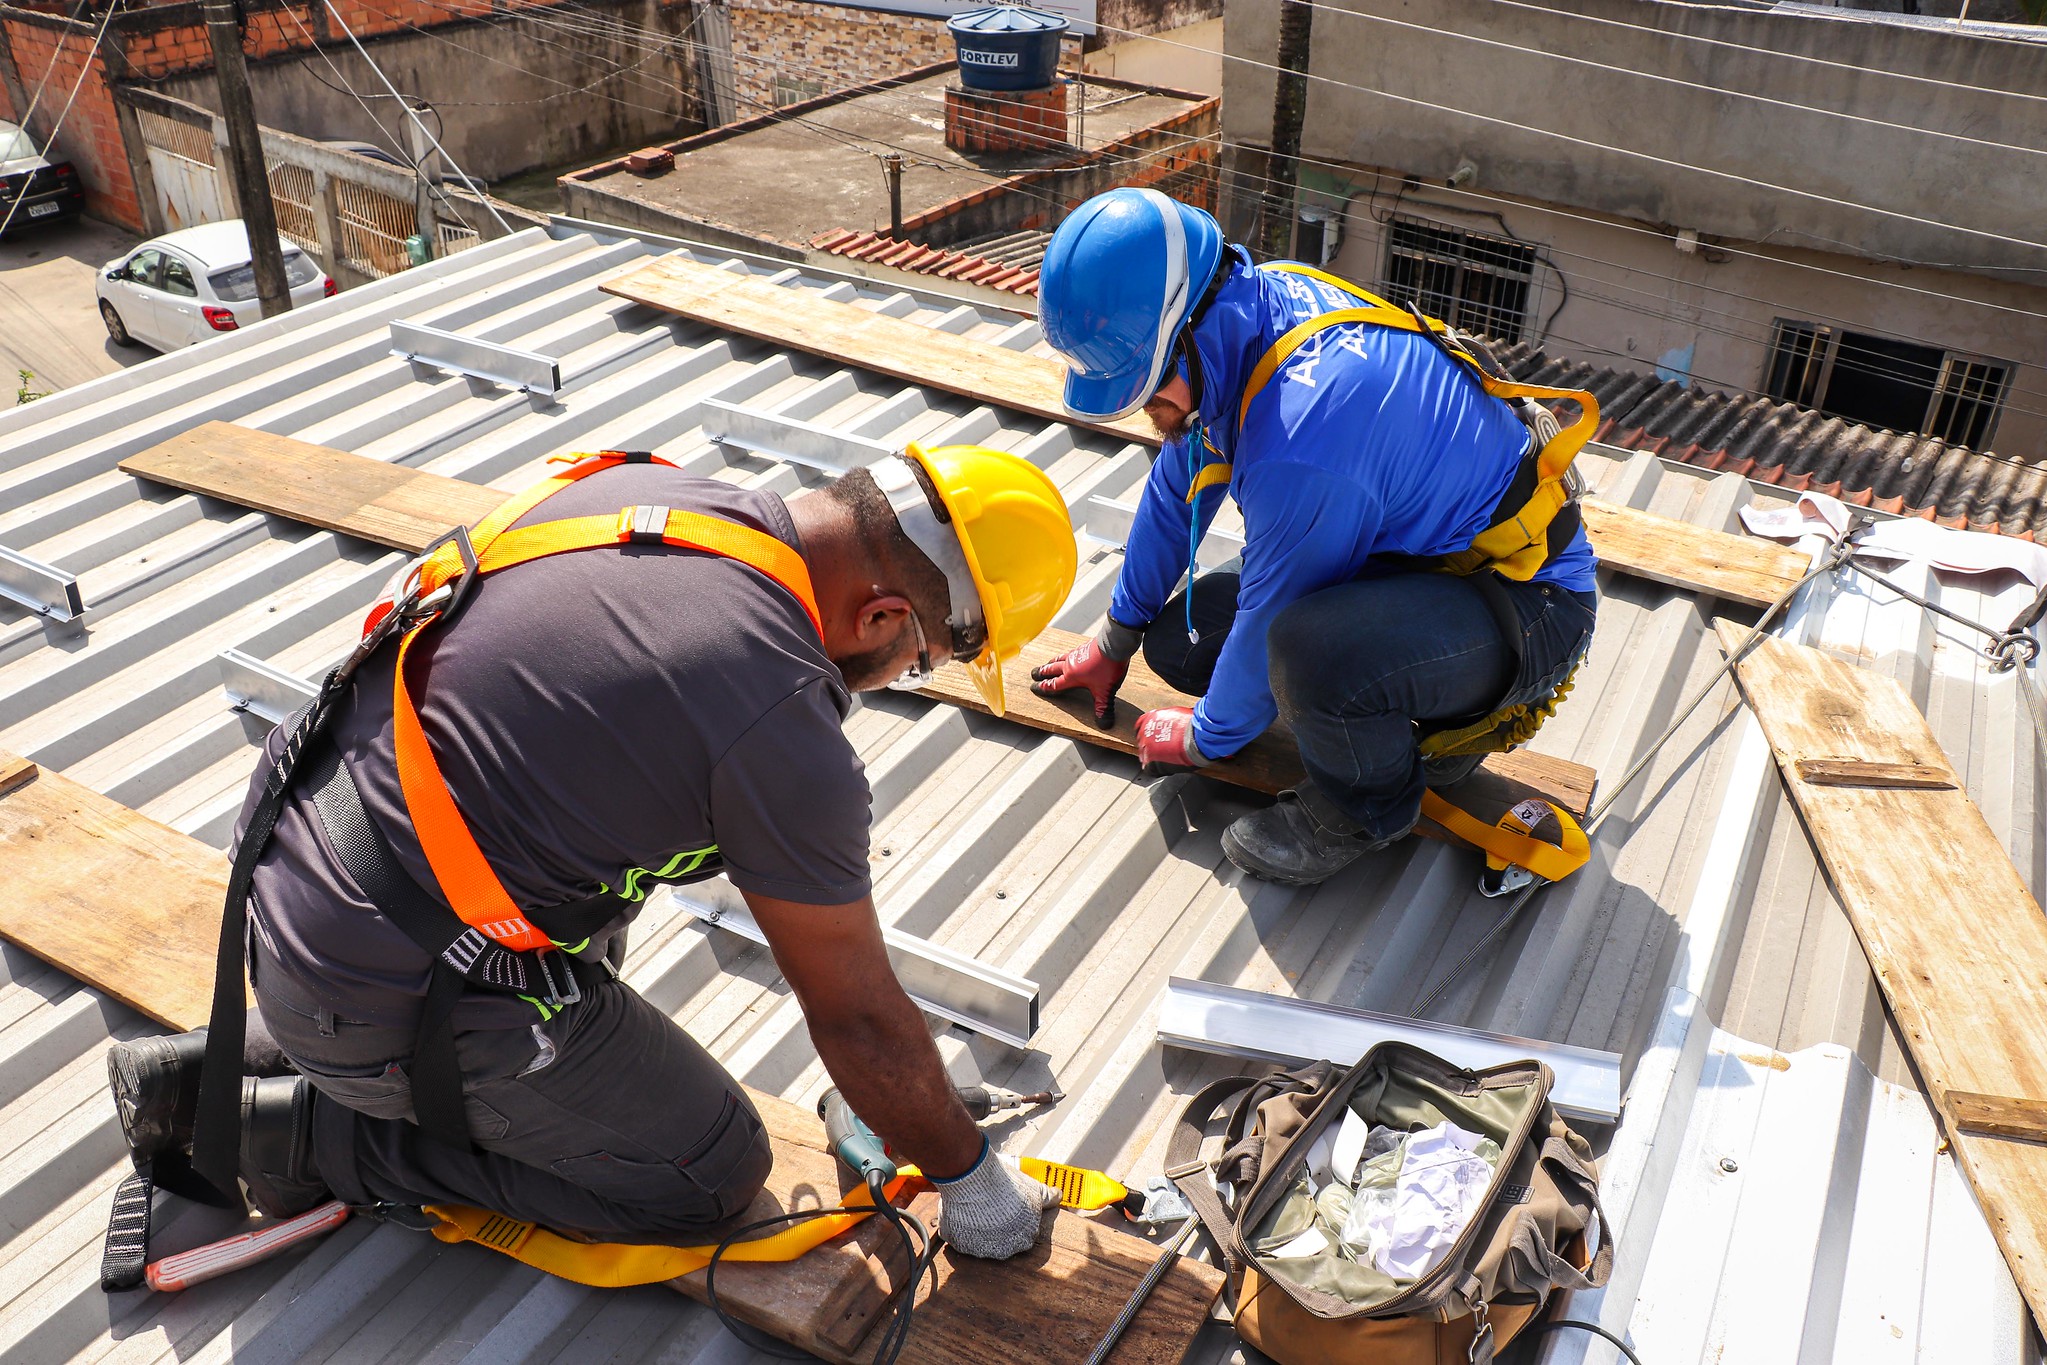 Técnicos da comunidade, capacitados pela Solarize, instalaram o sistema no telhado. Foto: Alexandre Cerqueira / ComCat